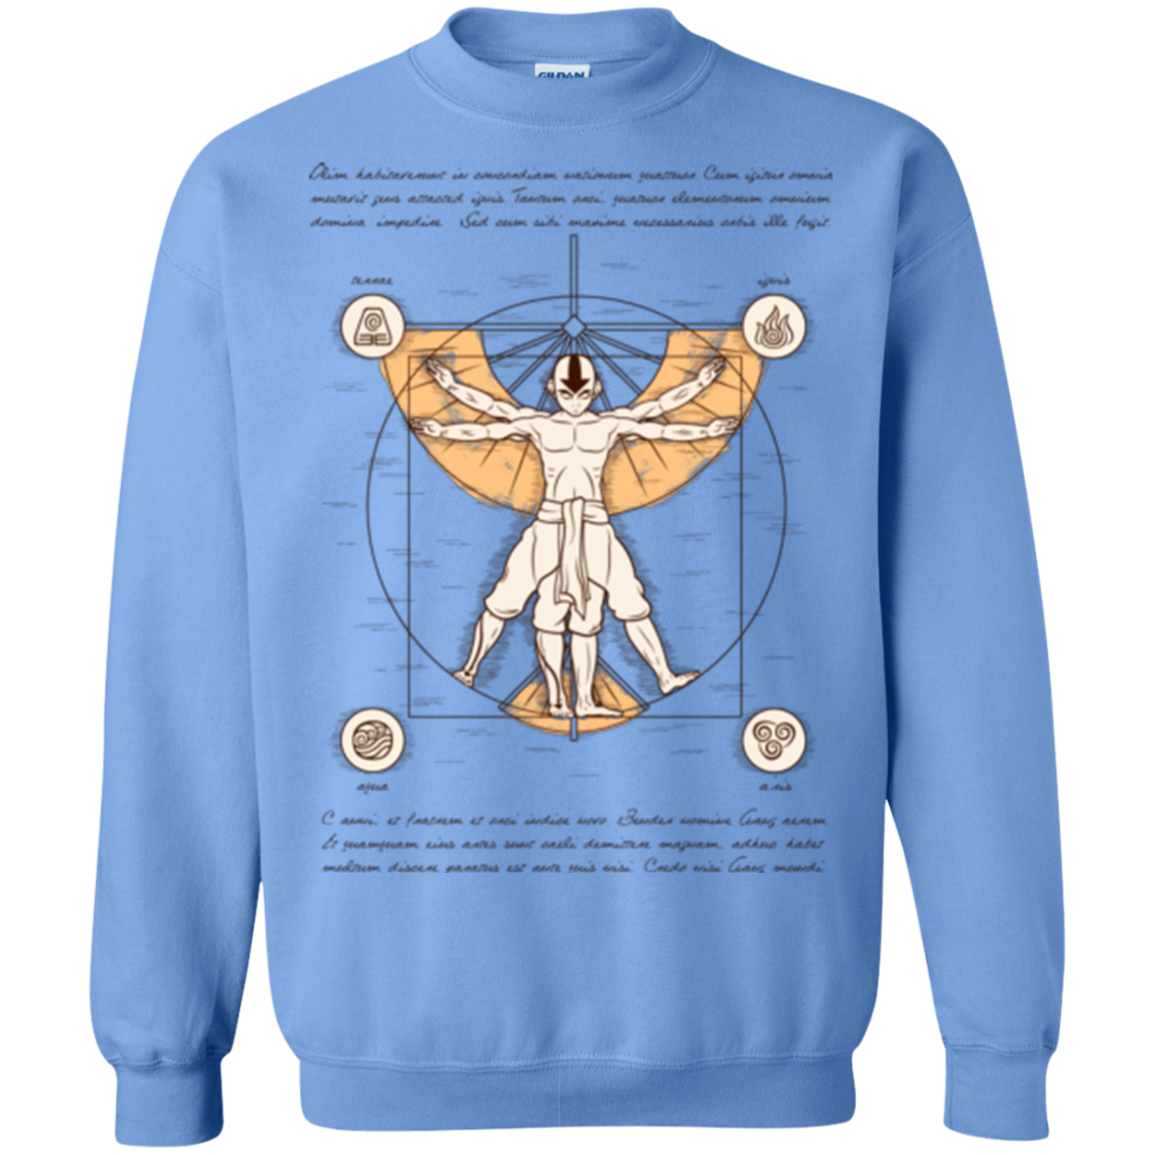 Vitruvian Aang Crewneck Sweatshirt